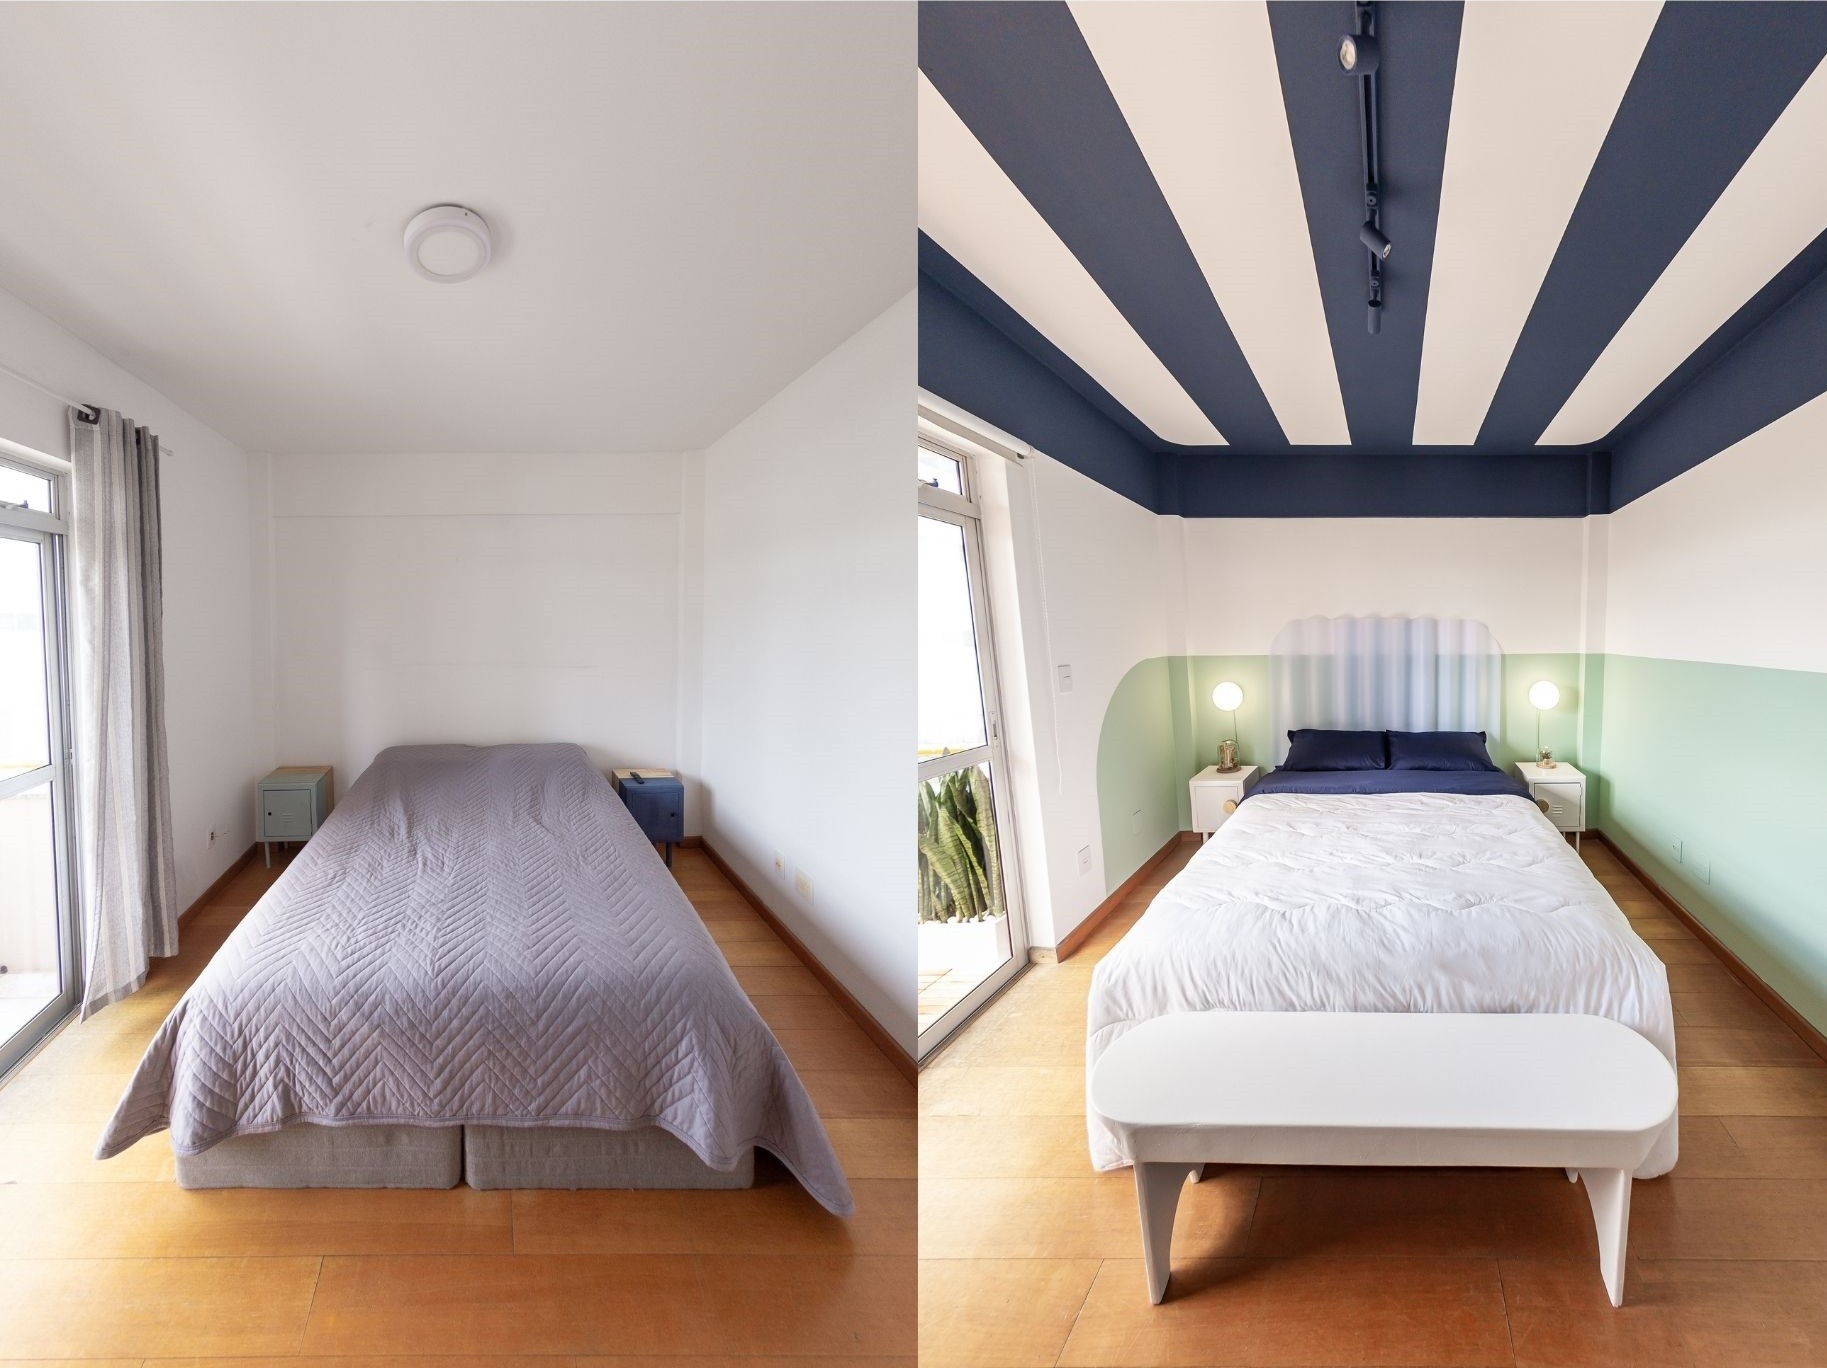 Décor do dia: quarto ganha teto listrado após reforma; veja o antes e depois (Foto: Célio Olizar)